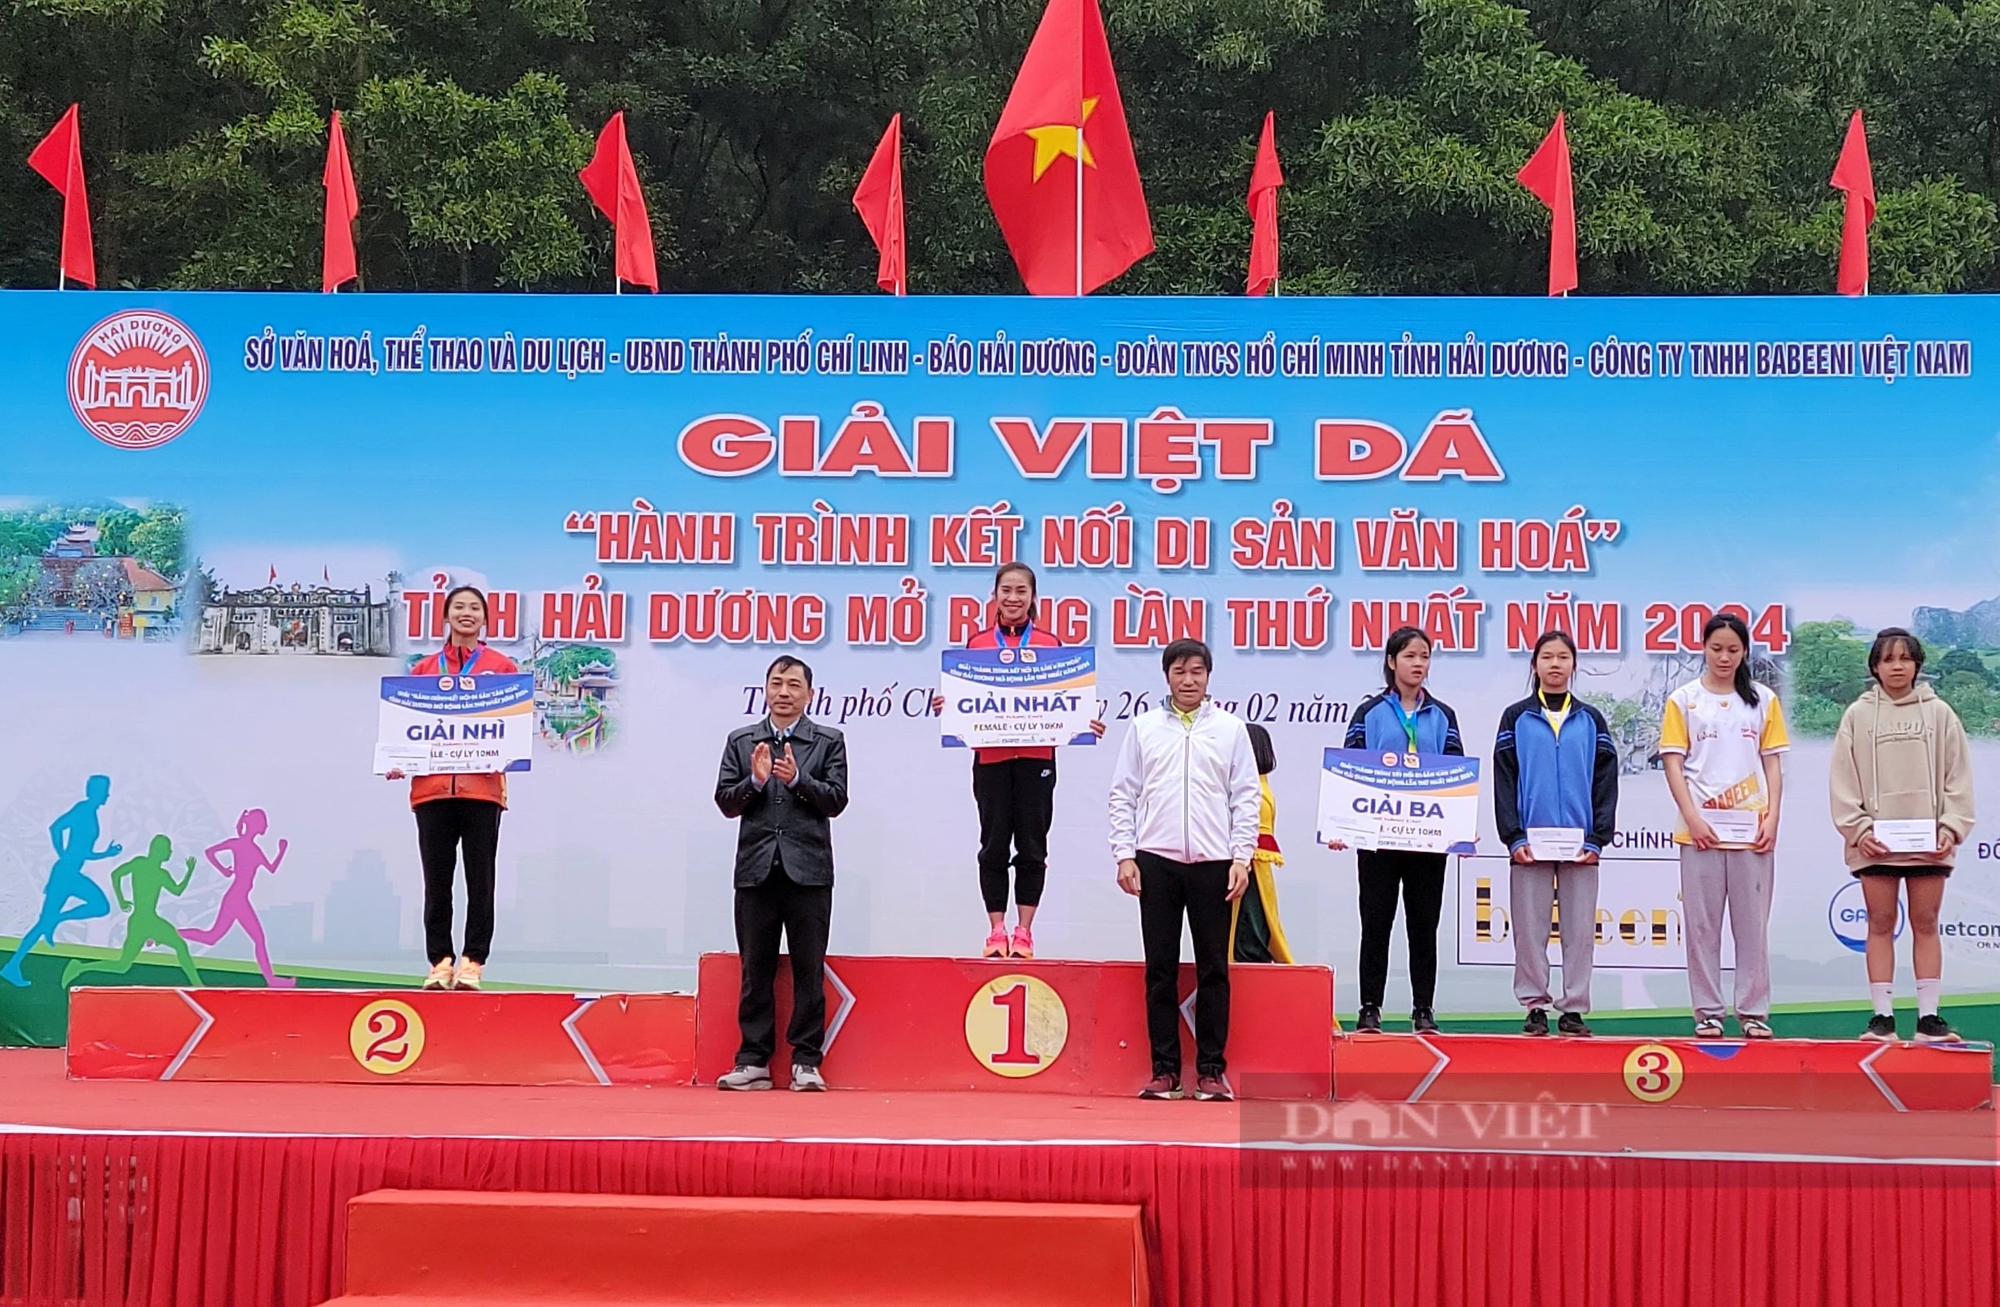 Cô gái "vàng" Nguyễn Thị Oanh và gần 1.000 người tham gia Giải Việt dã tỉnh Hải Dương mở rộng lần thứ nhất- Ảnh 9.